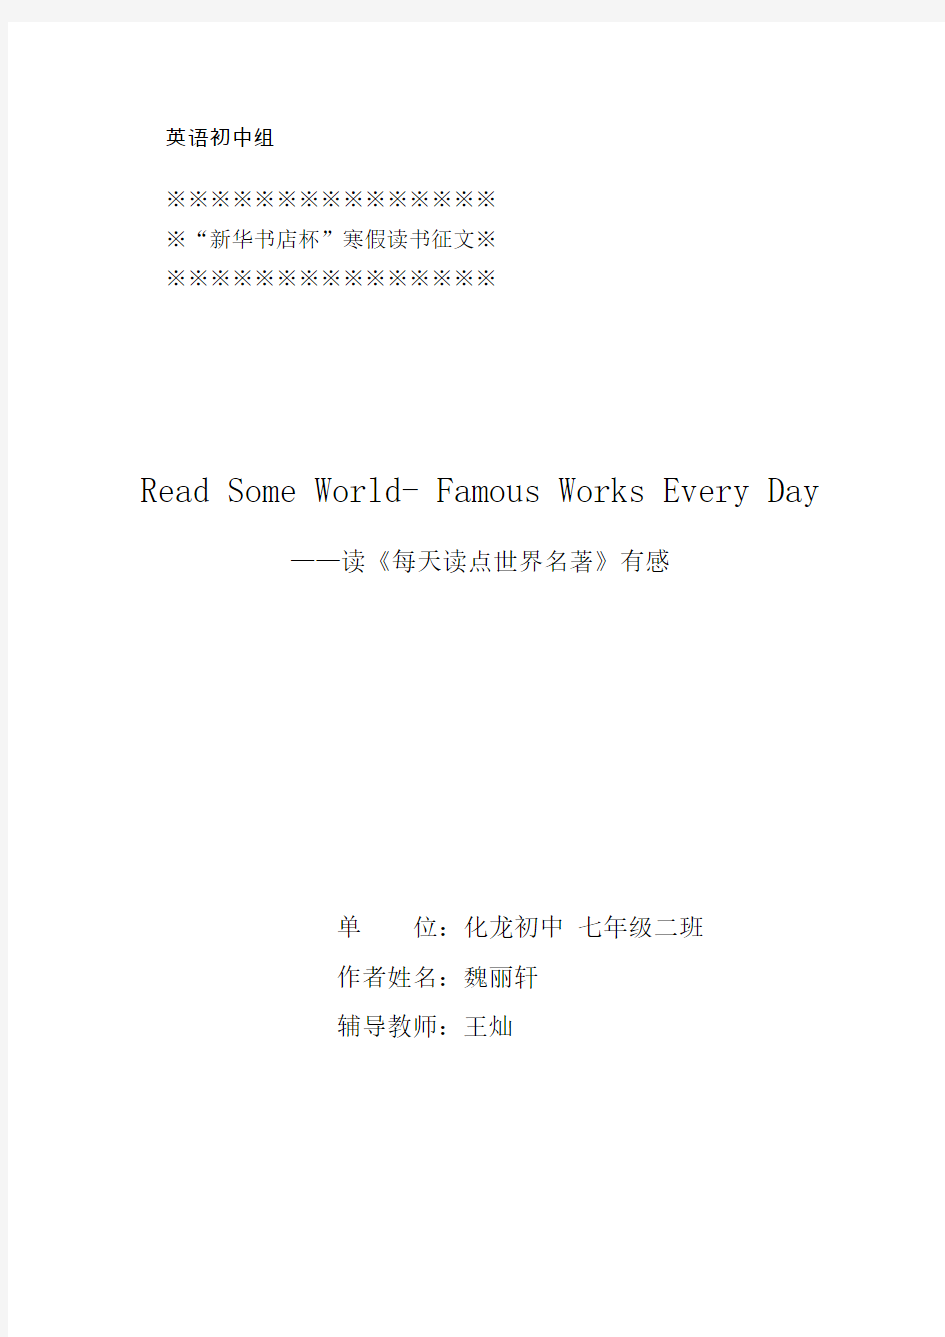 7.2魏丽轩：Read some world- famous works every day